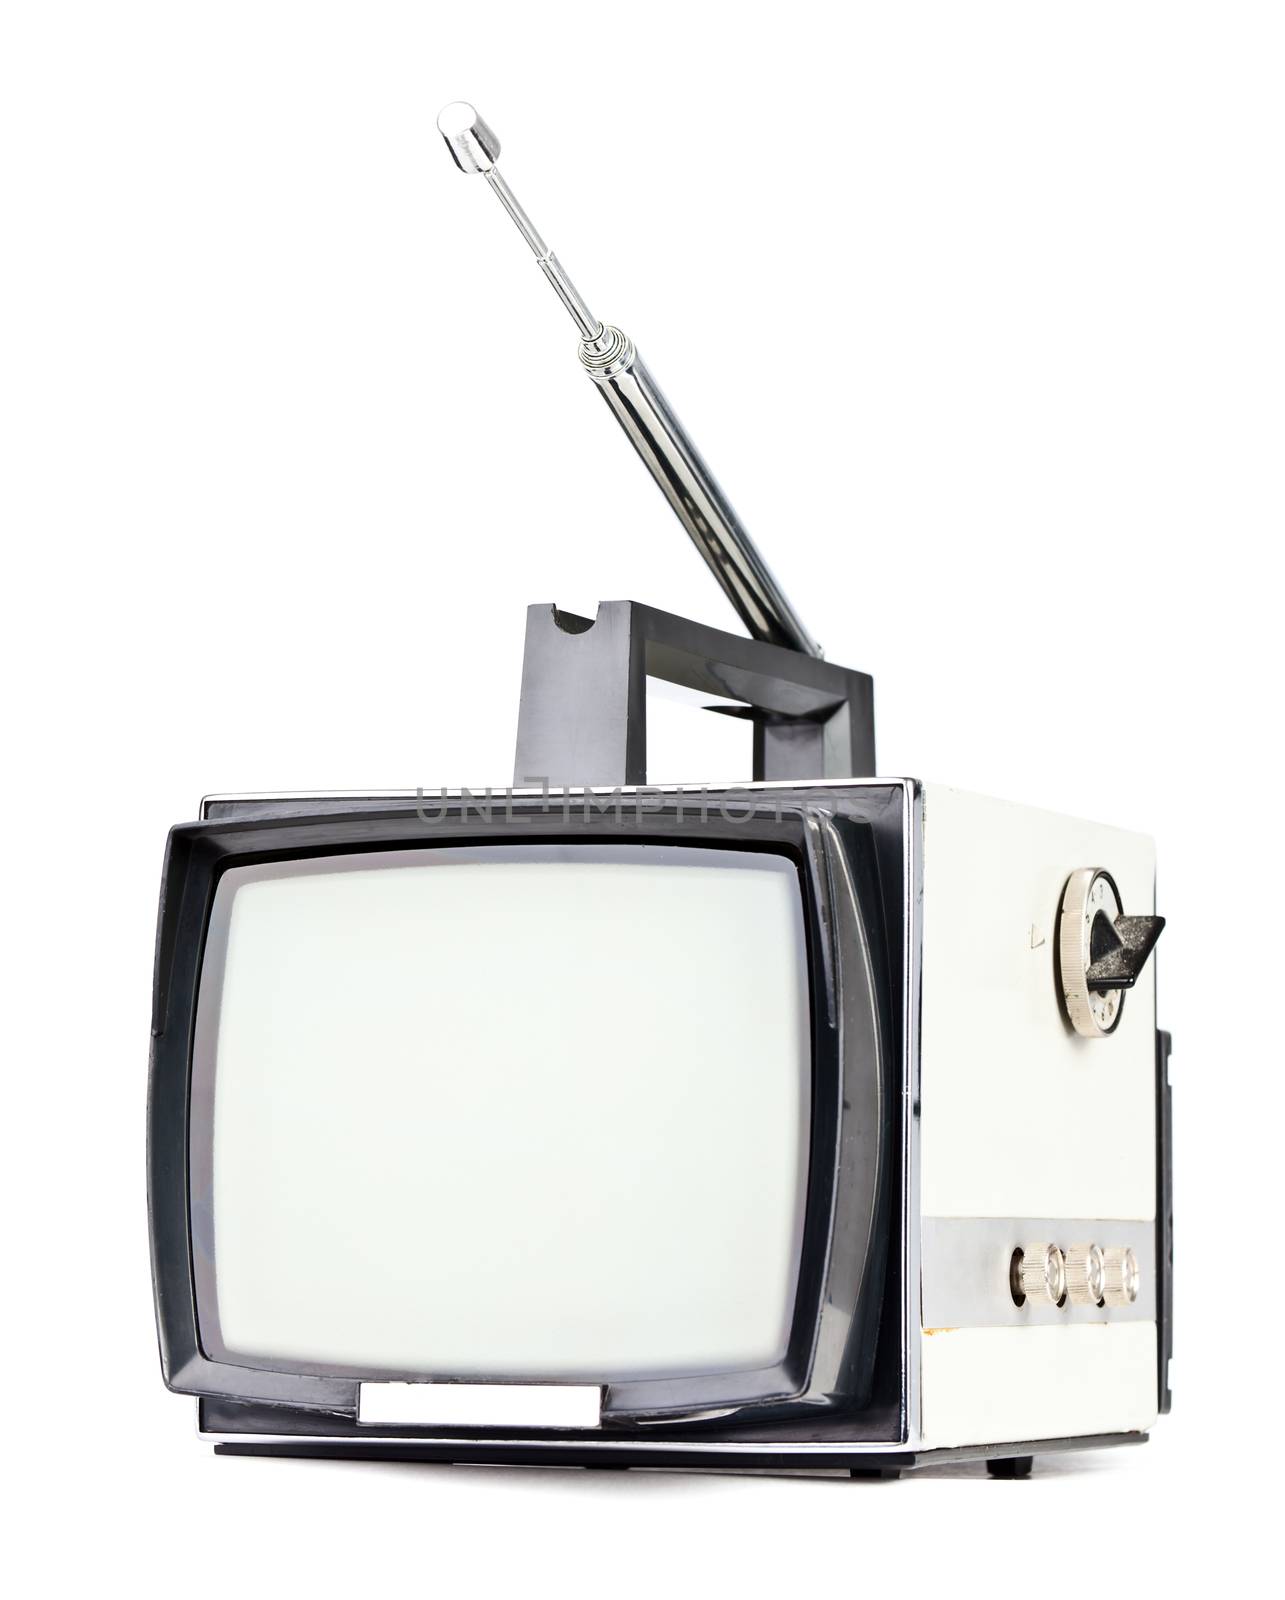 Vintage TV set by naumoid